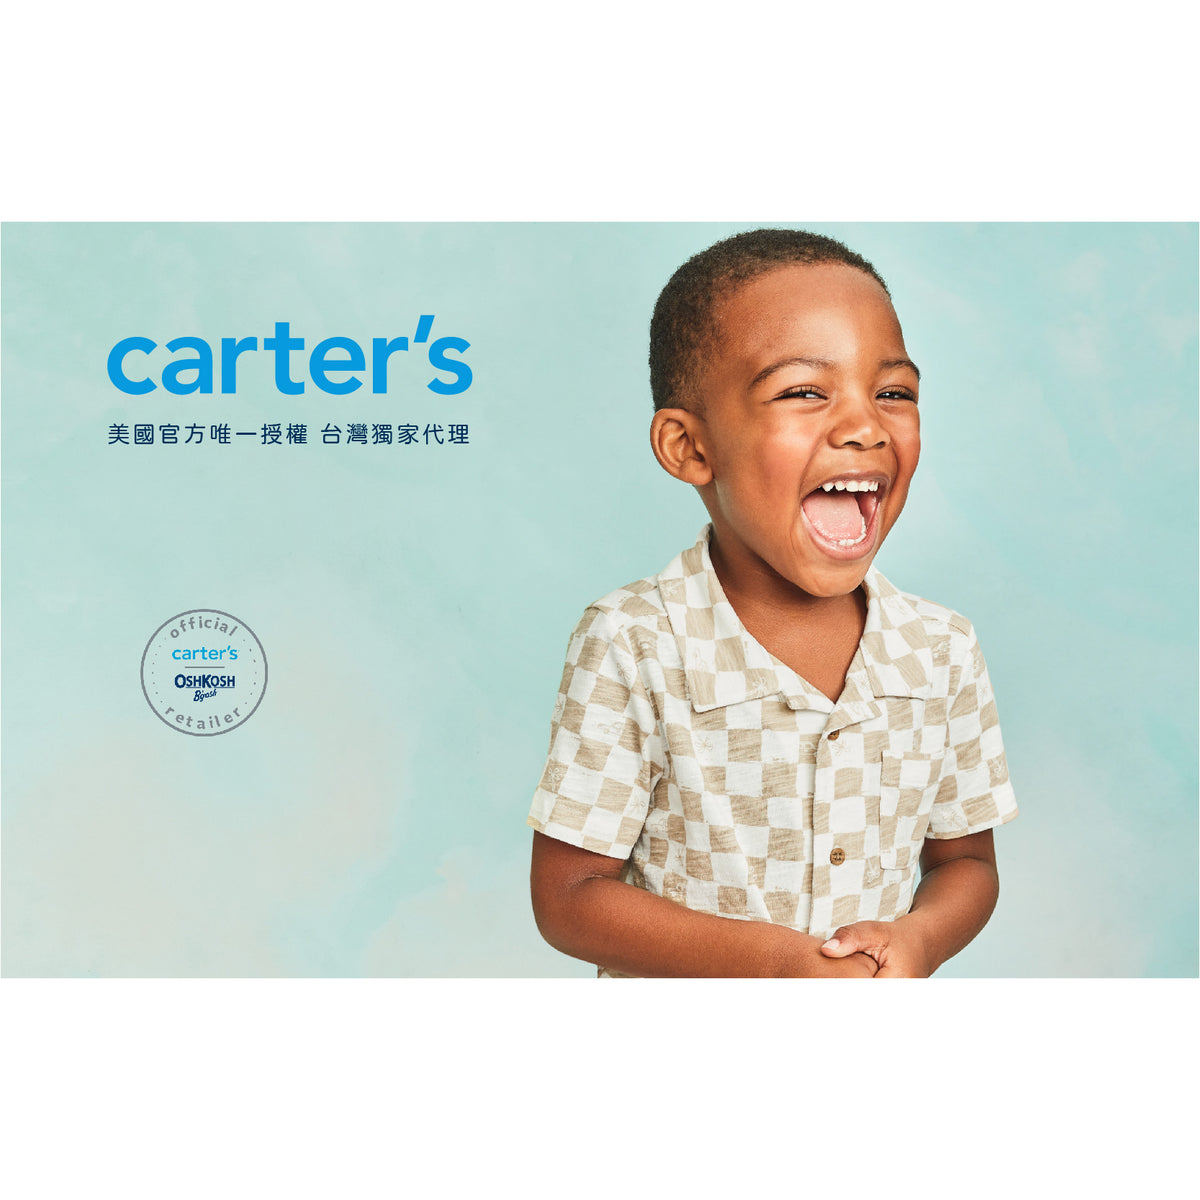 Carter's 小小棒球員2件組套裝(3T-5T)